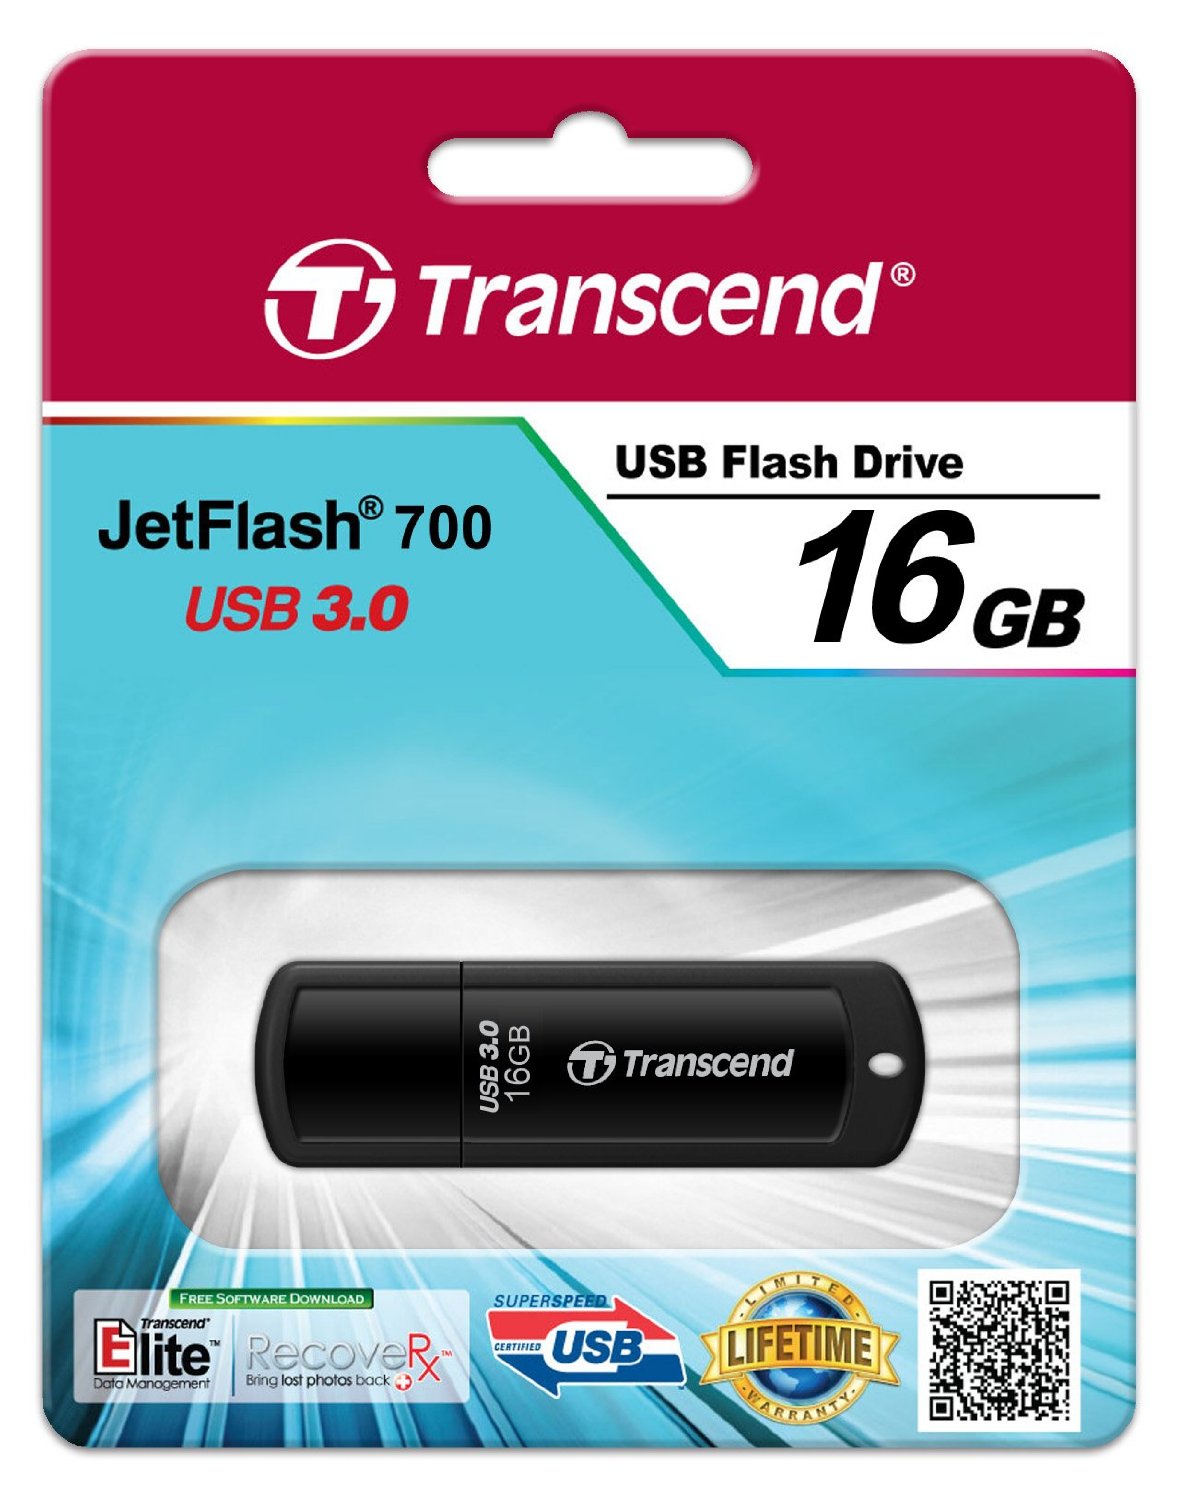 USB 16GB Transcend JetFlash 700 USB 3.0 Flash Drive (TS16GJF700)